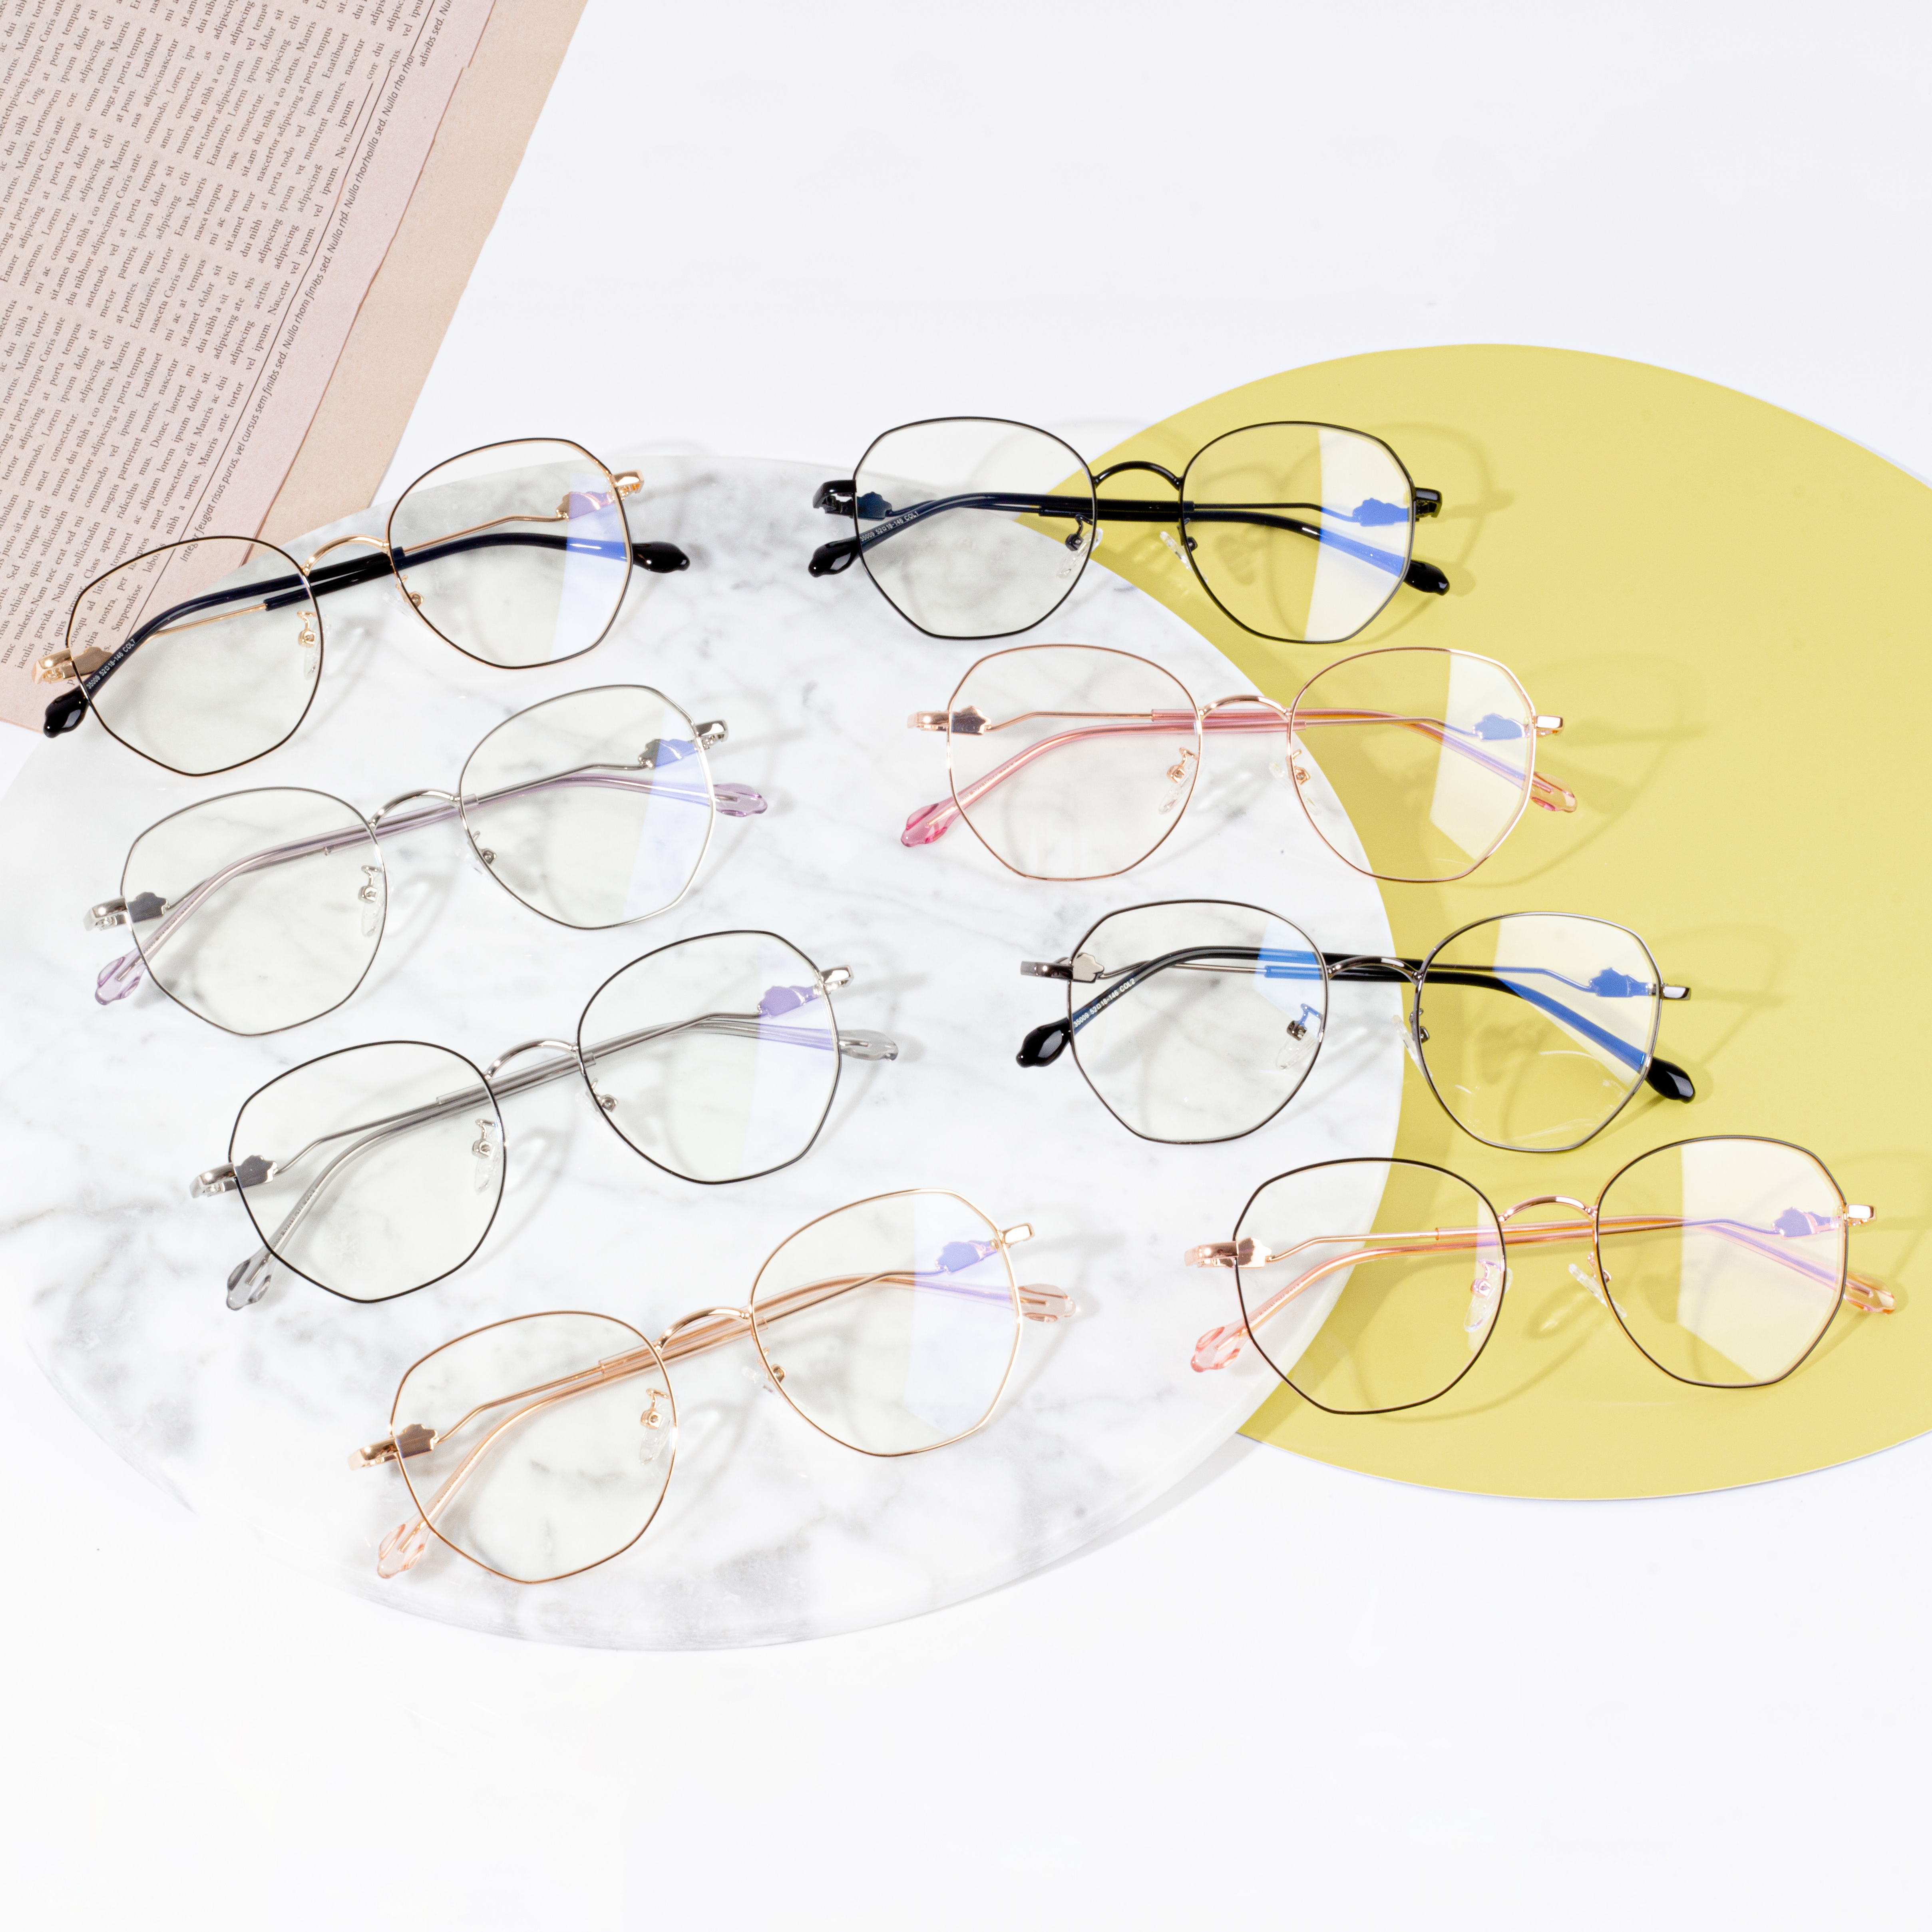 regolazione delle montature degli occhiali